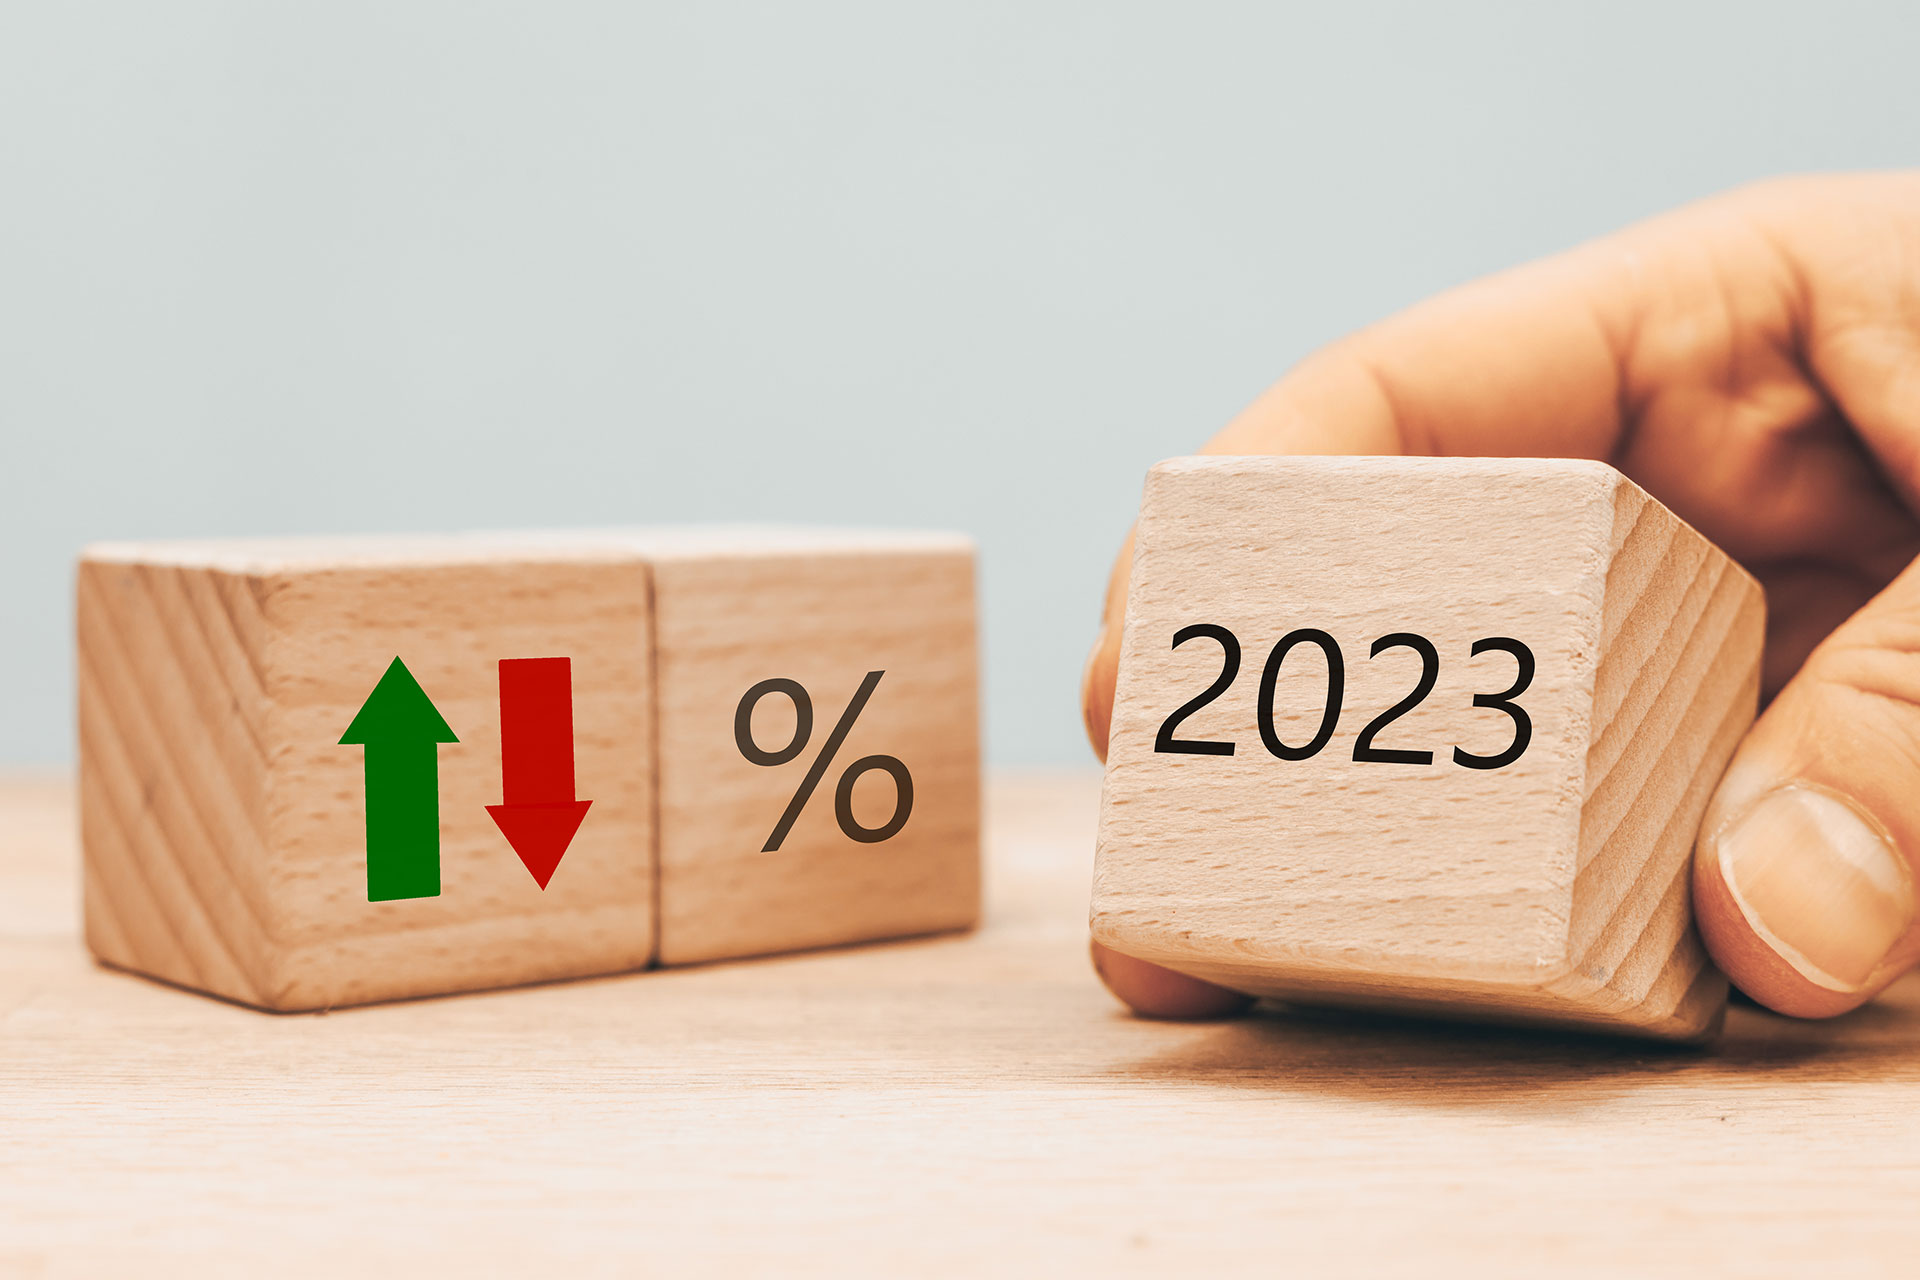 Holzwürfel mit Prozentzeichen und der Zahl 2023